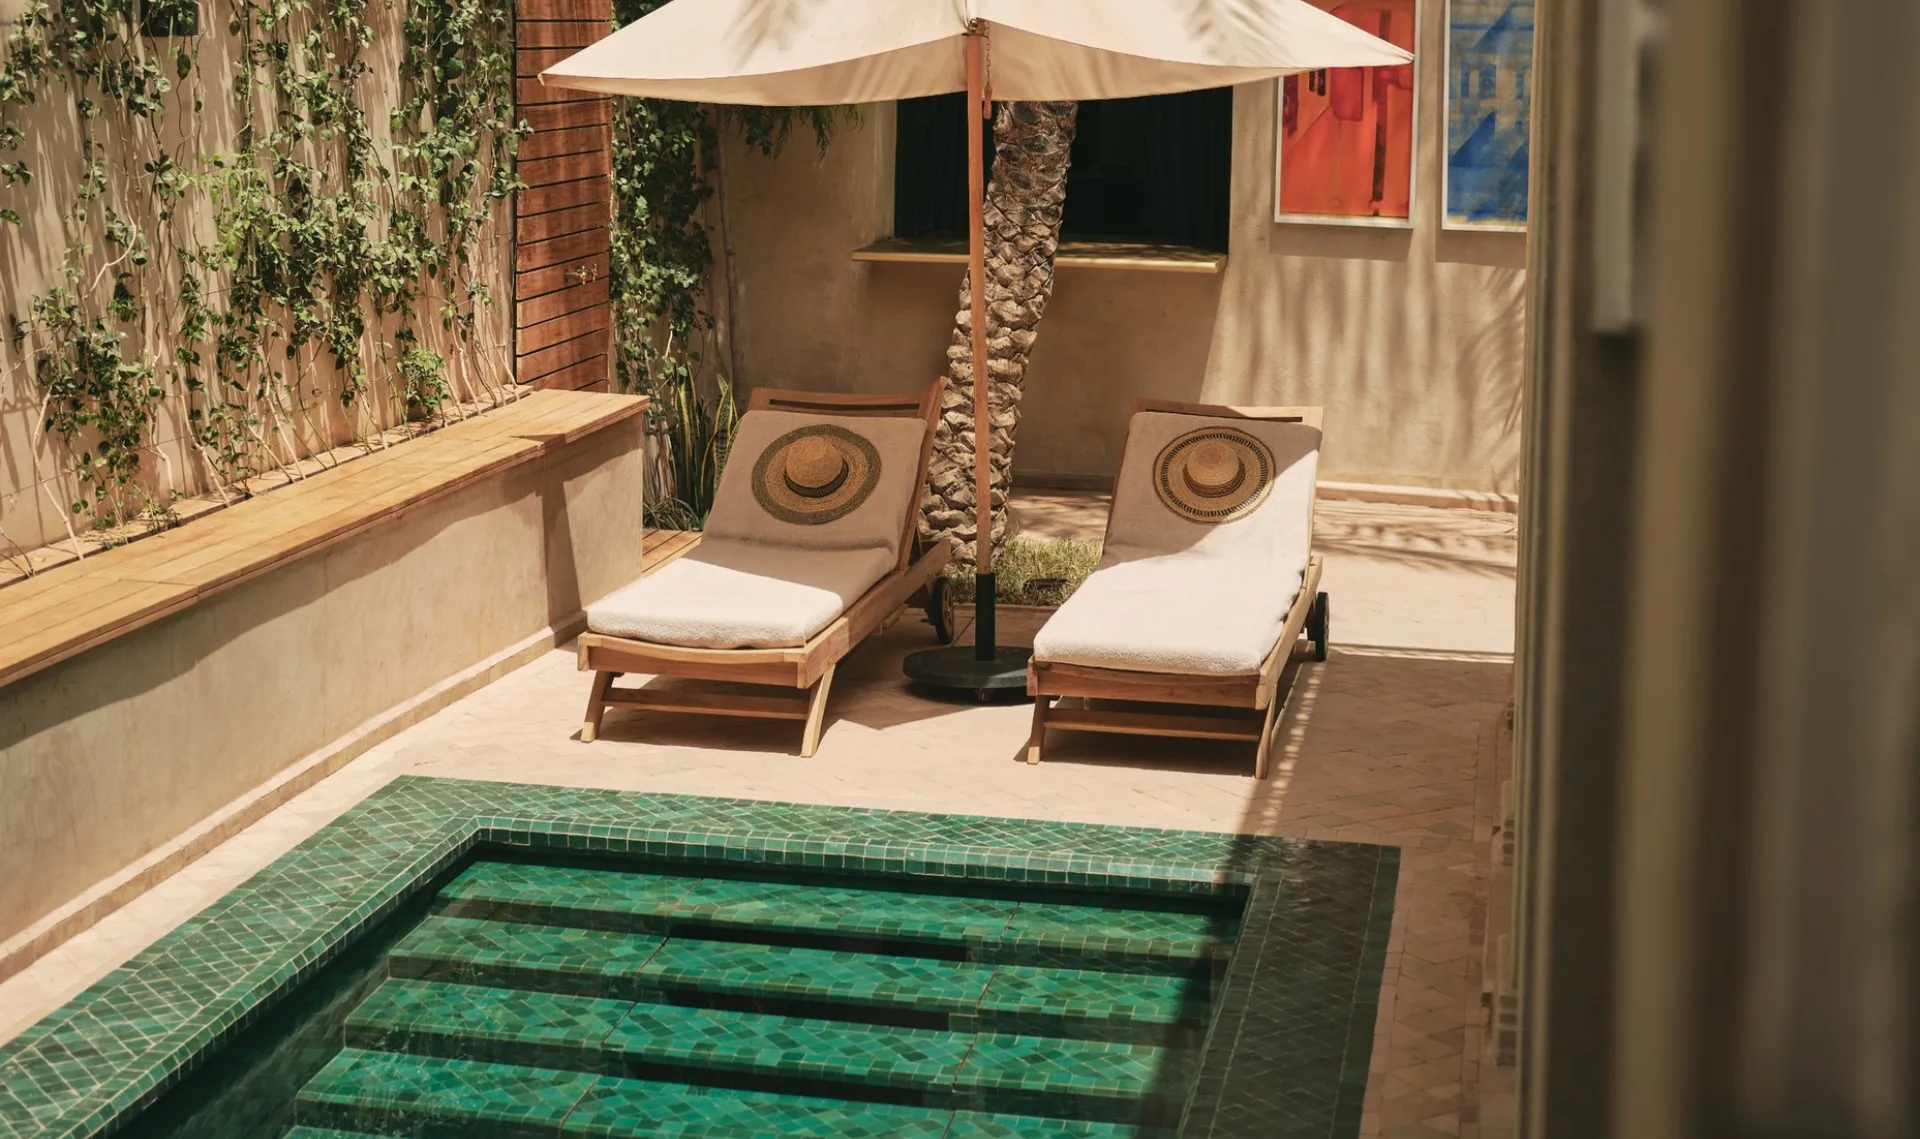 Así es Izza, un nuevo hotel en Marruecos para alojarse y disfrutar